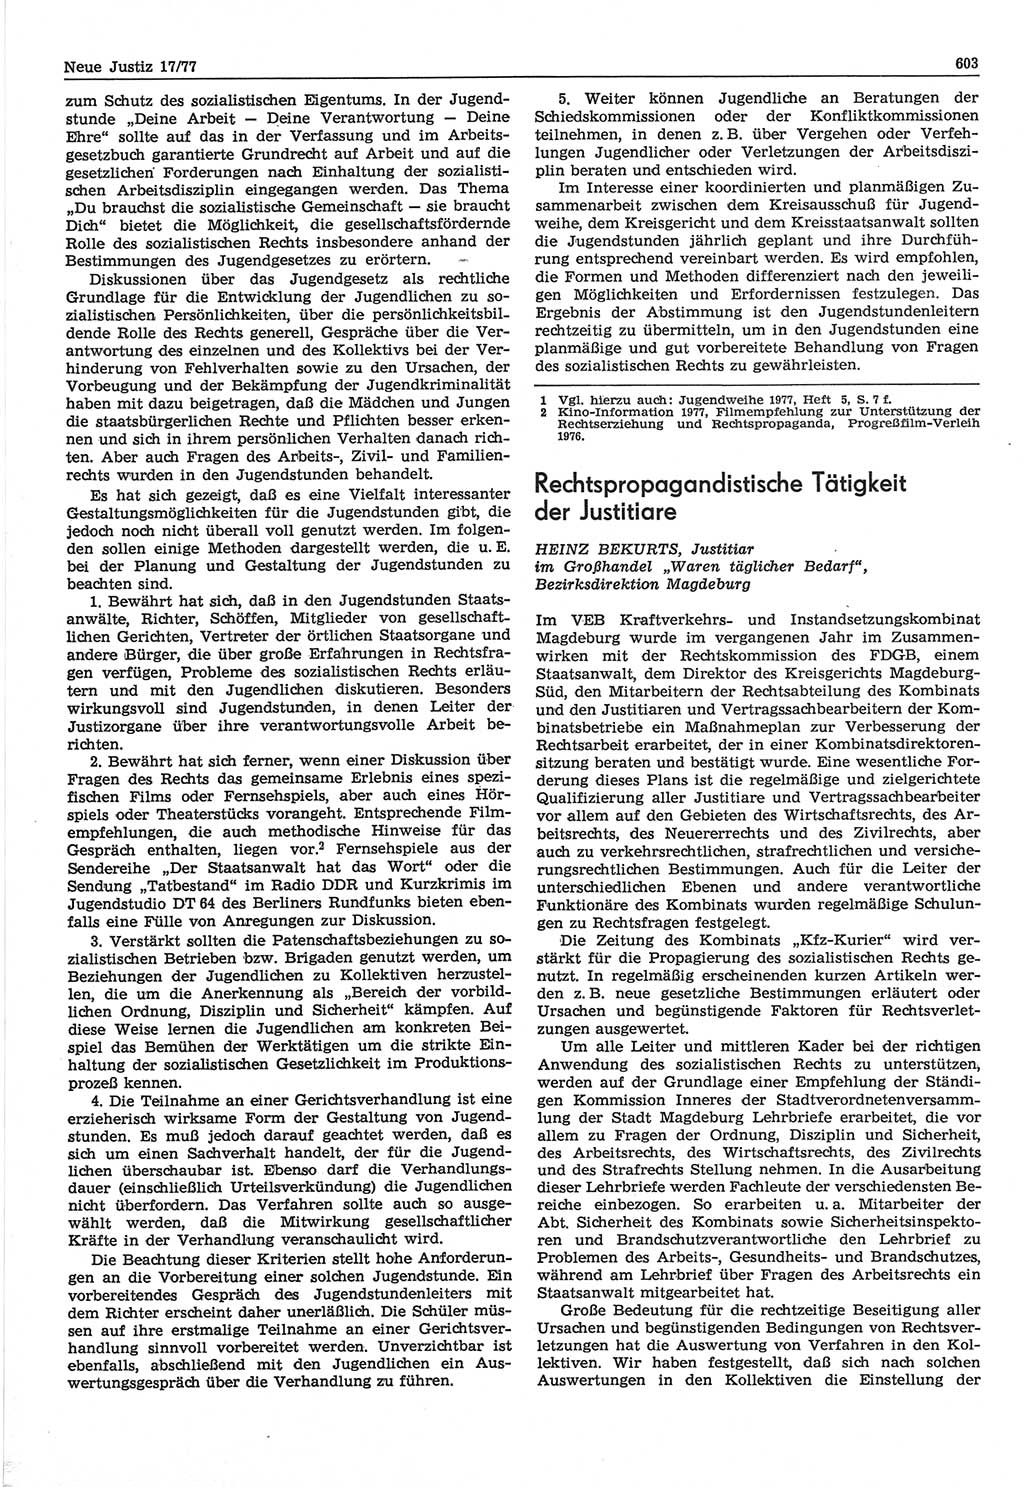 Neue Justiz (NJ), Zeitschrift für Recht und Rechtswissenschaft-Zeitschrift, sozialistisches Recht und Gesetzlichkeit, 31. Jahrgang 1977, Seite 603 (NJ DDR 1977, S. 603)